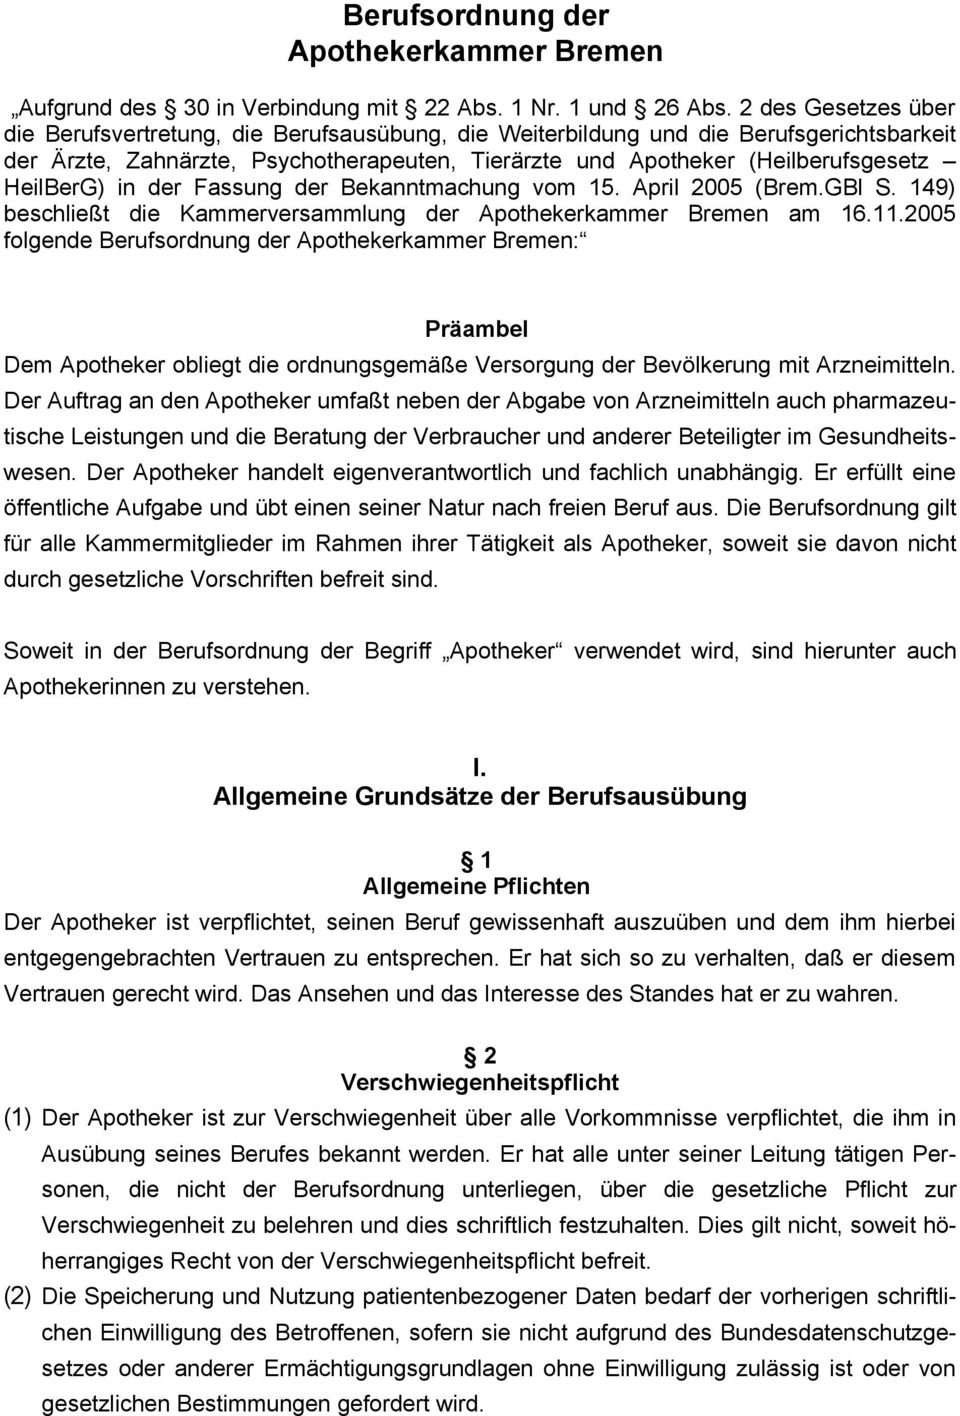 HeilBerG) in der Fassung der Bekanntmachung vom 15. April 2005 (Brem.GBl S. 149) beschließt die Kammerversammlung der Apothekerkammer Bremen am 16.11.